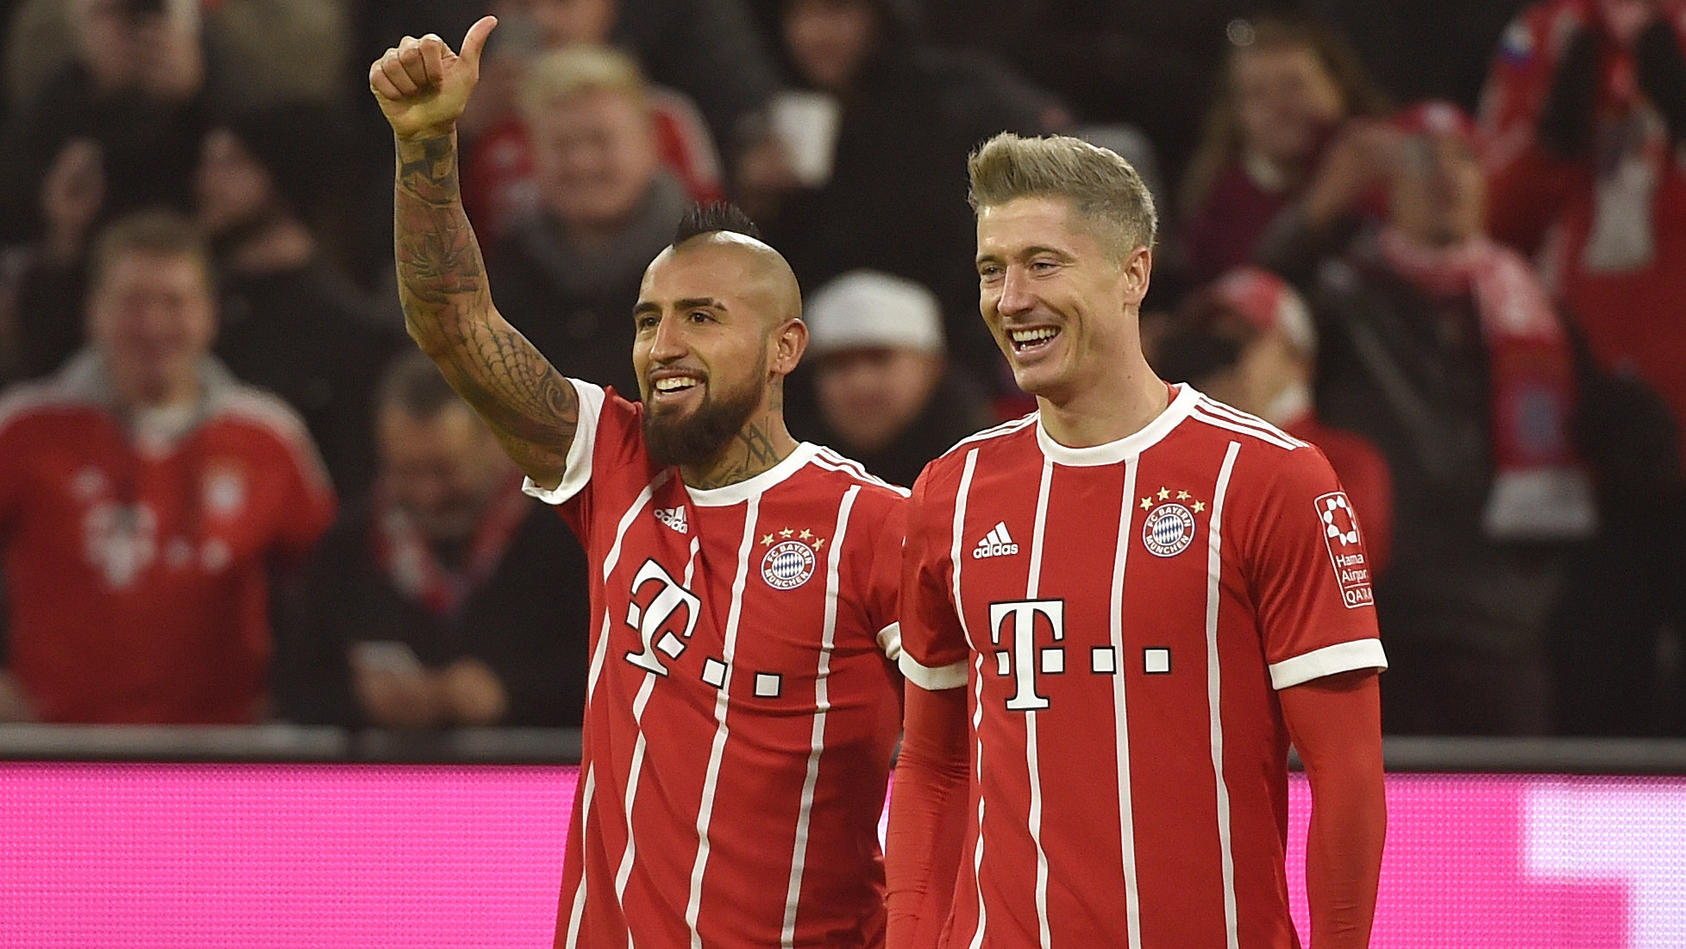 Hatten gut lachen: Arturo Vidal und Robert Lewandowski schossen die Bayern zum 3:0-Sieg gegen Augsburg.